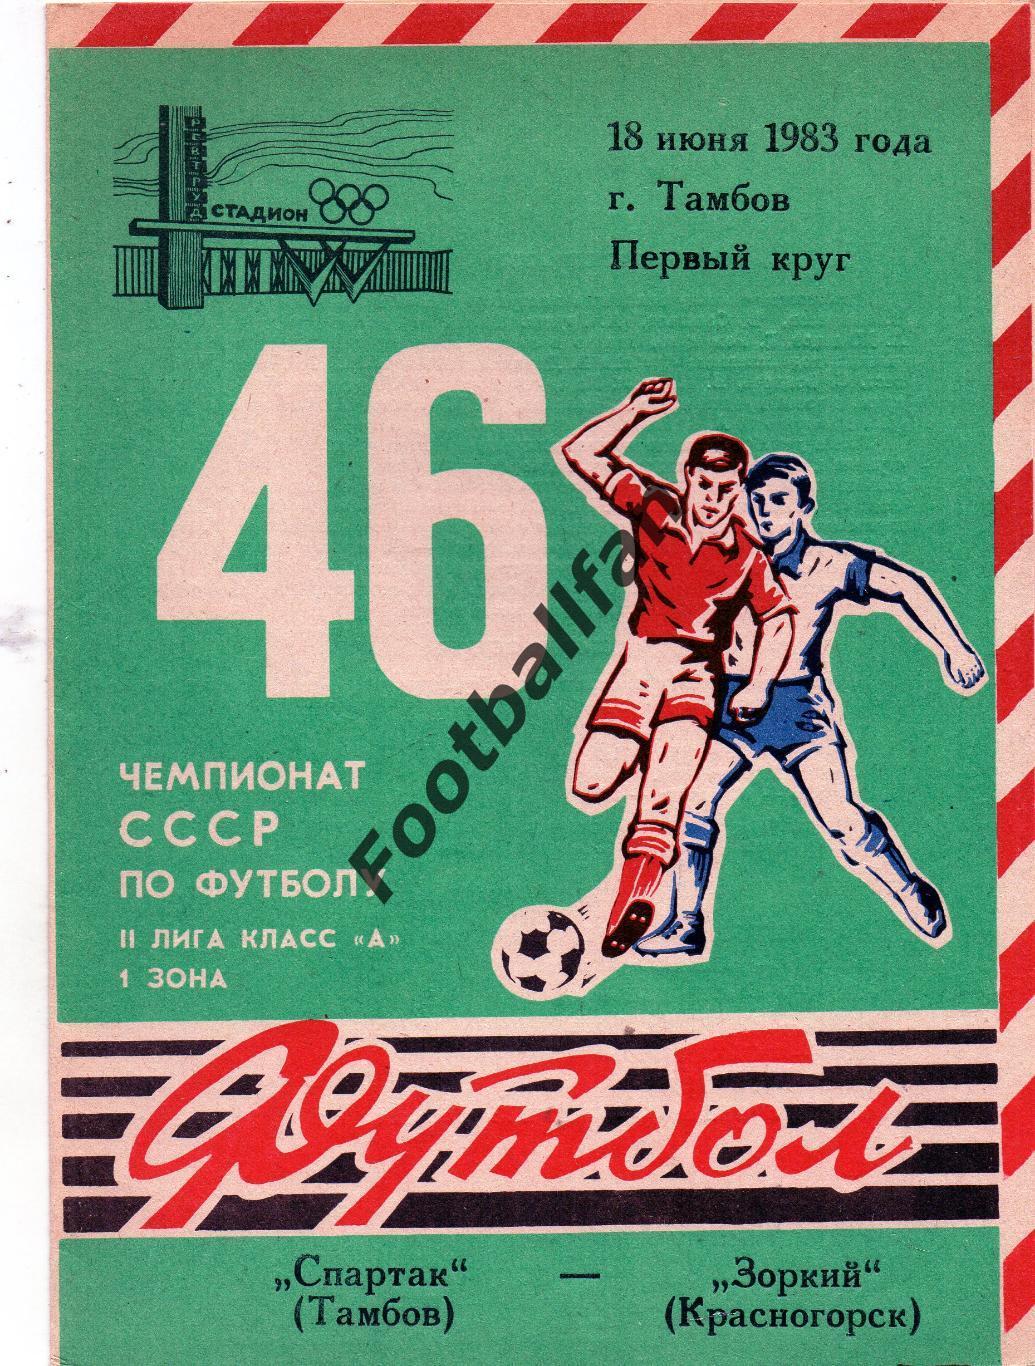 Спартак Тамбов - Зоркий Красногорск 18.06.1983